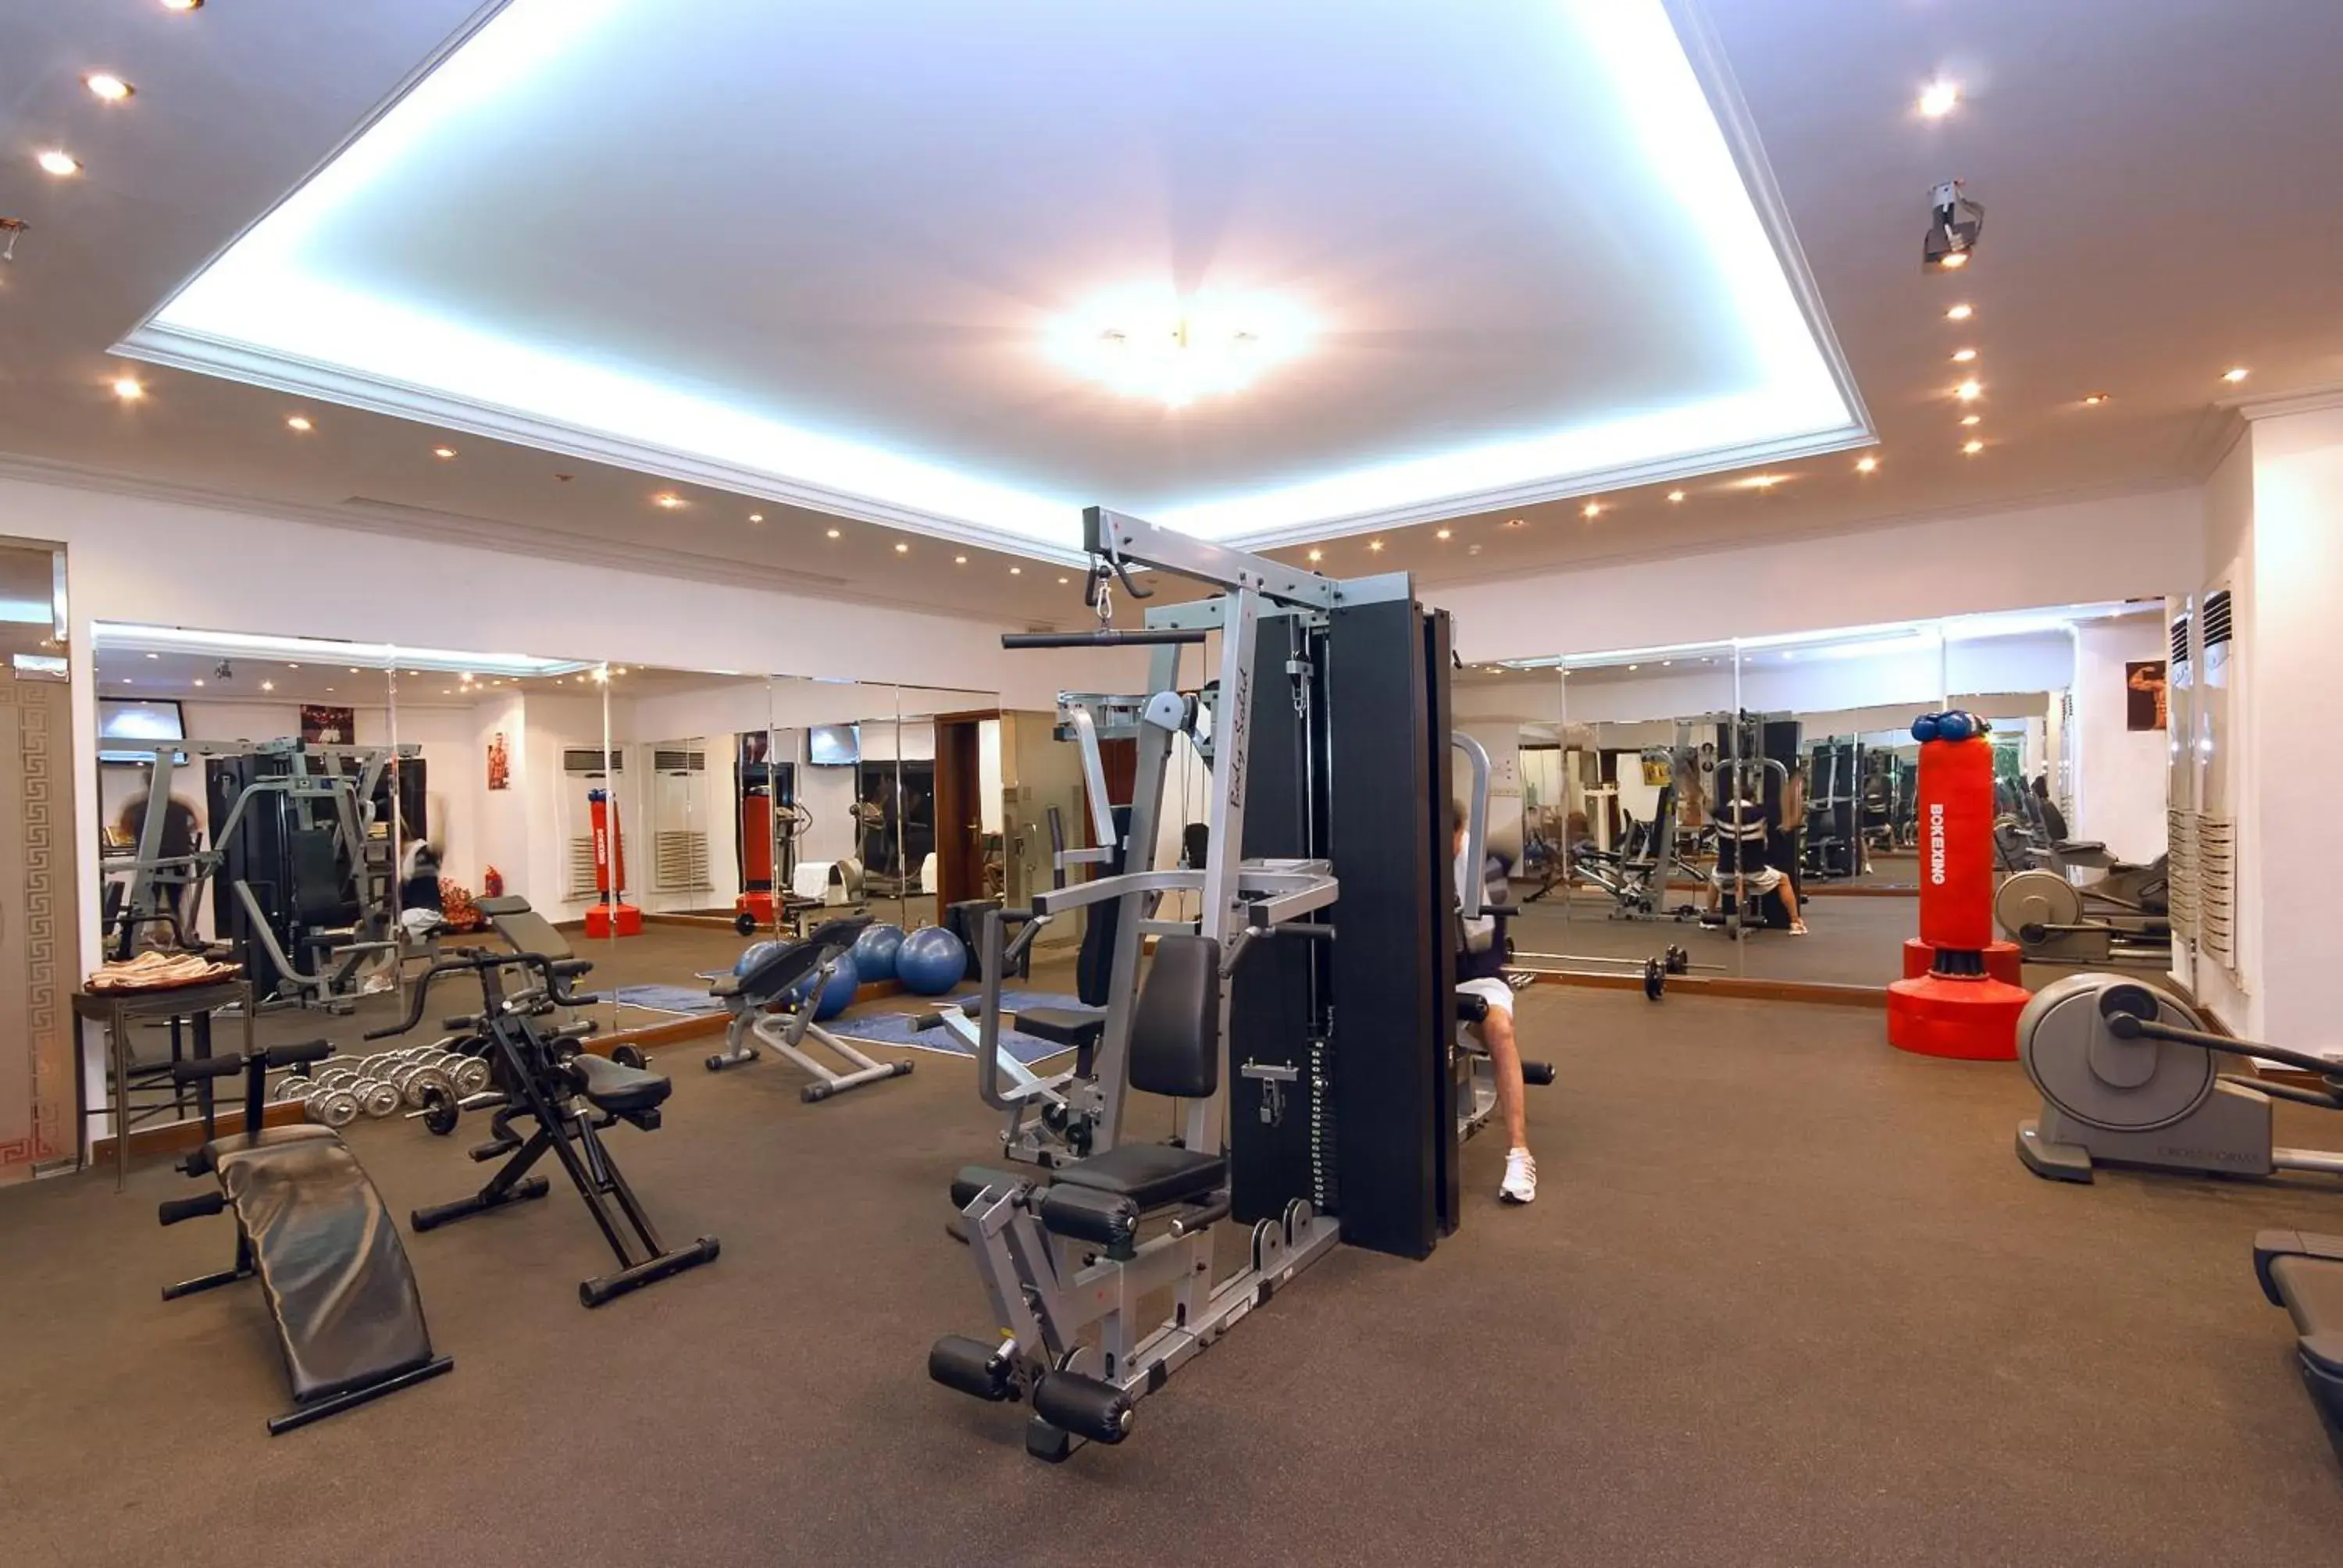 Fitness centre/facilities, Fitness Center/Facilities in Casablanca Hotel Jeddah